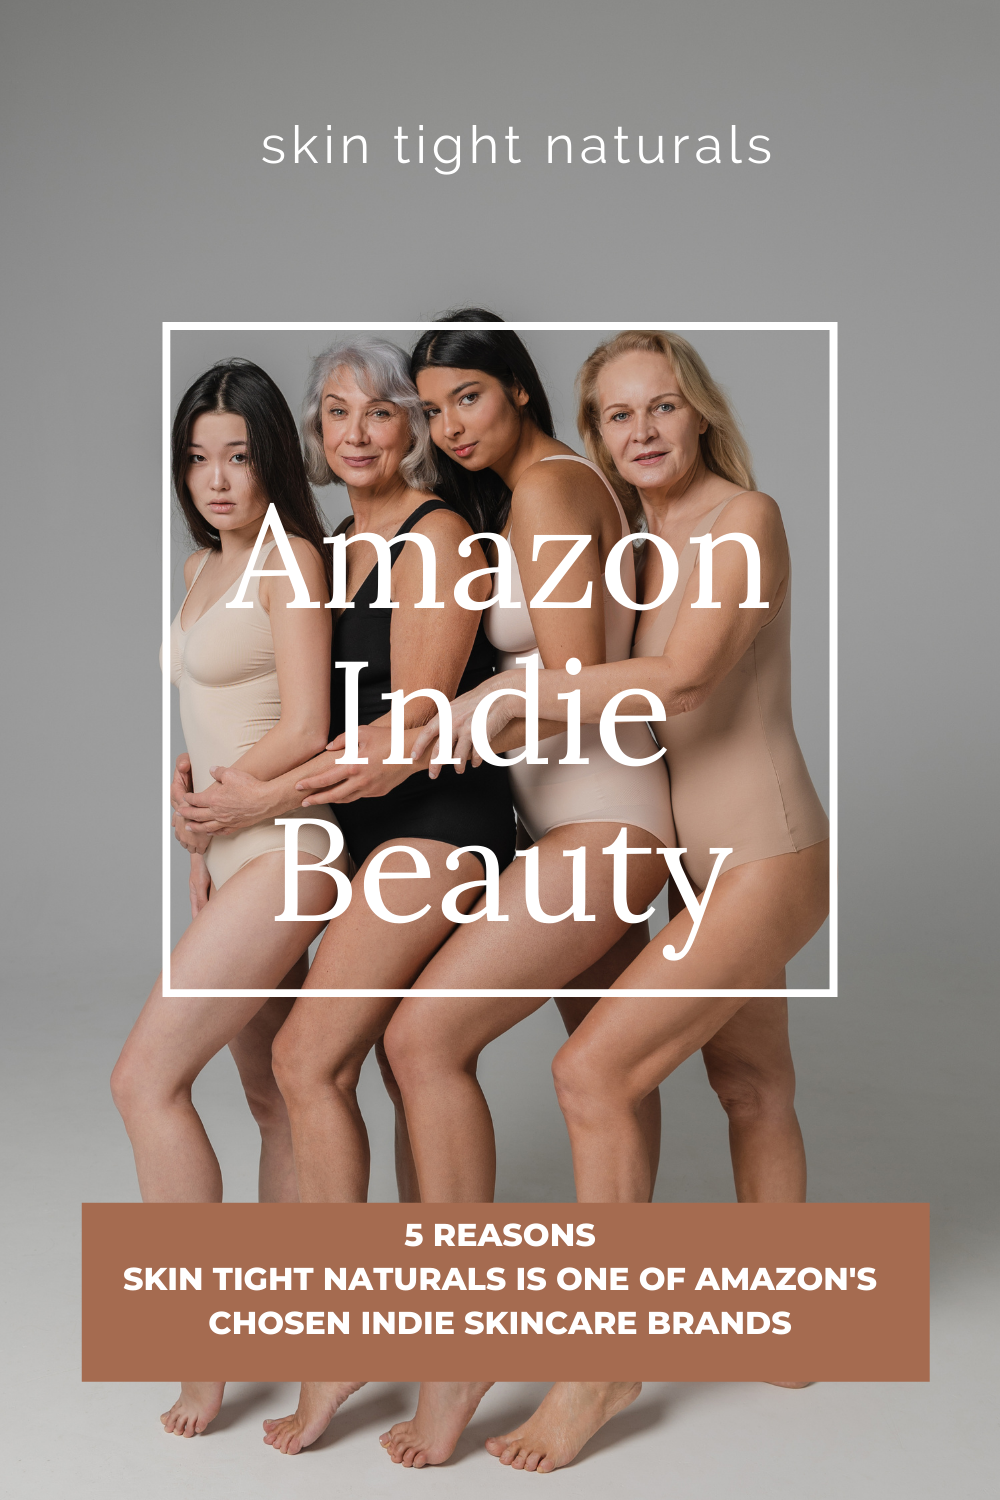 Amazon Chooses Skin Tight Naturals